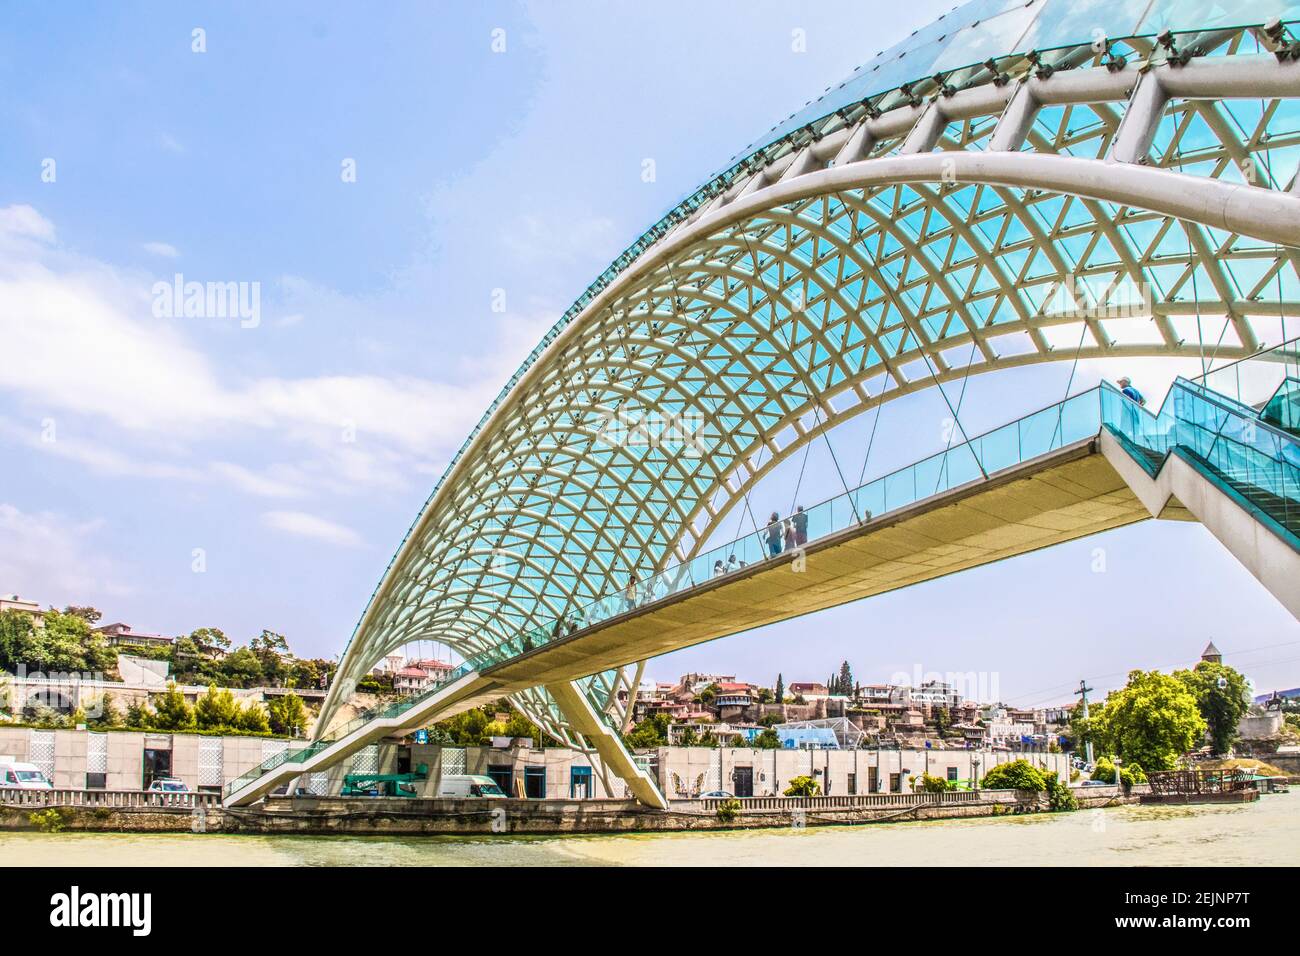 019 07 19 Tbilissi Géorgie - Pont de la paix - en forme d'arc passerelle de construction en acier et en verre éclairée par de nombreux LED sur K Banque D'Images